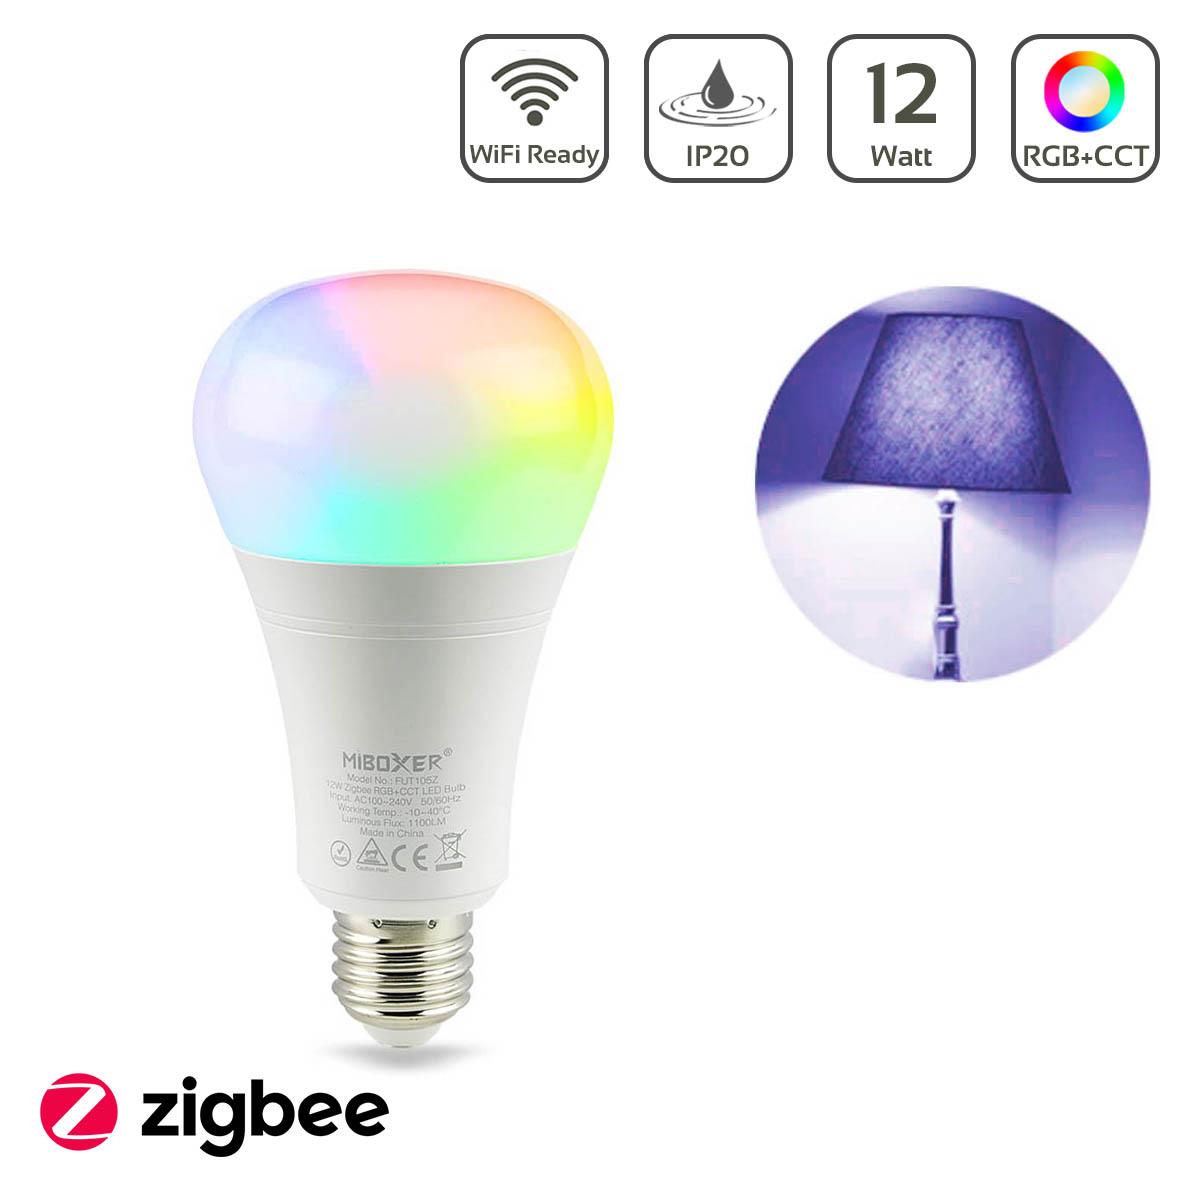 MiBoxer RGB+CCT Lampe 12W E27 Zigbee 2.4GHz WiFi ready FUT105Z